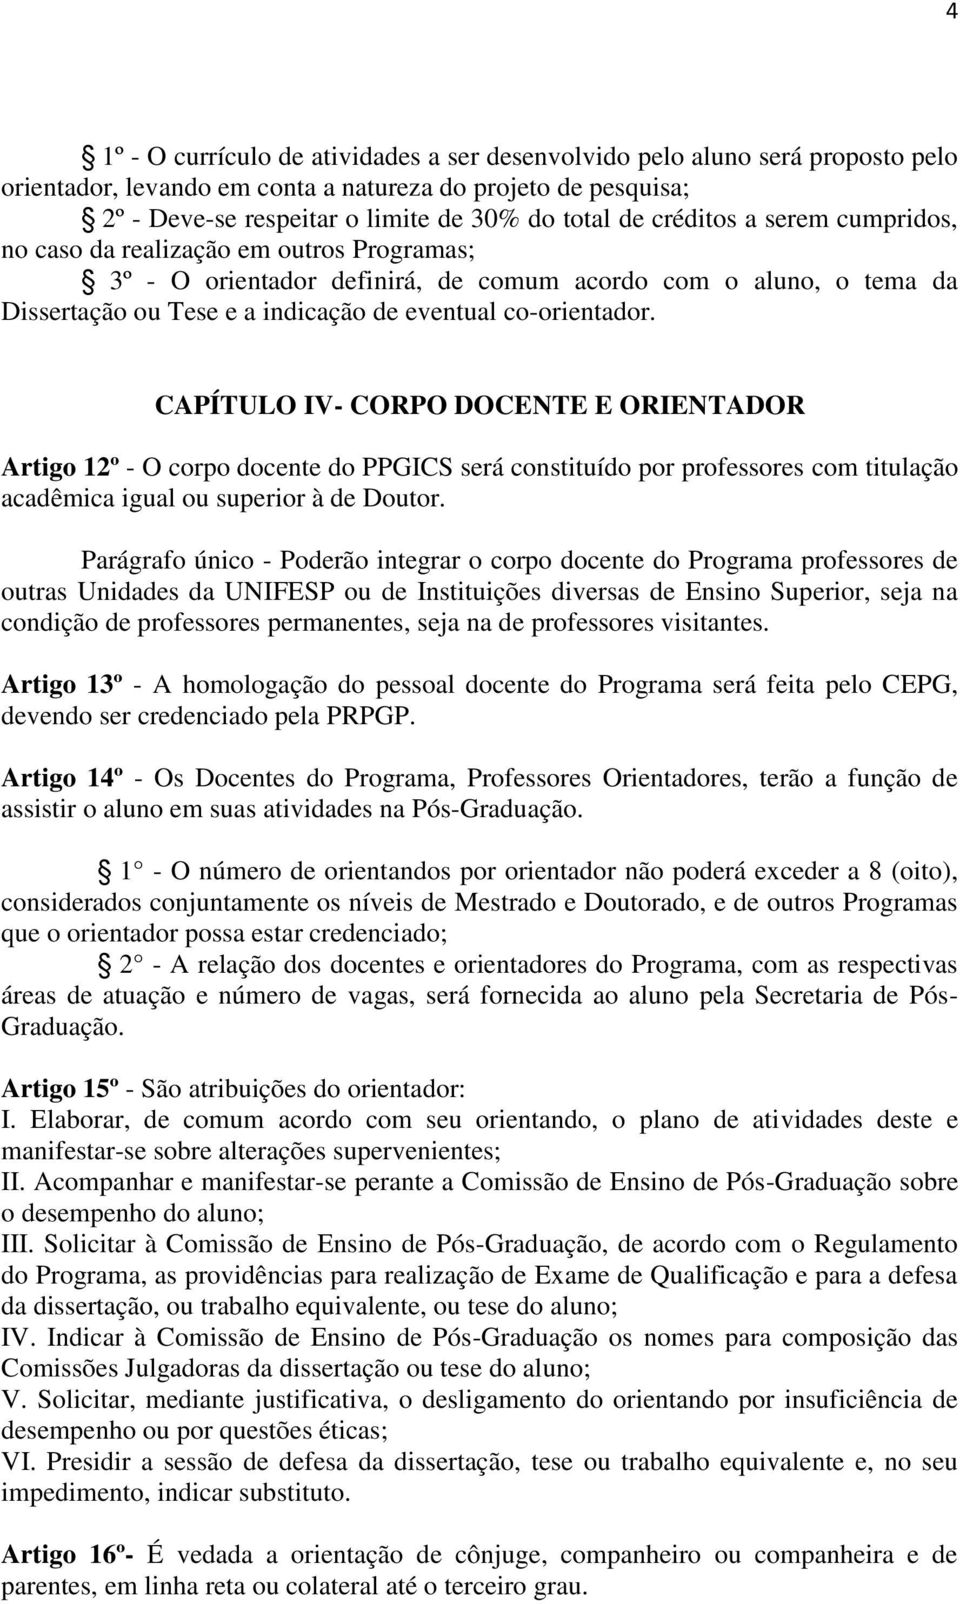 CAPÍTULO IV- CORPO DOCENTE E ORIENTADOR Artigo 12º - O corpo docente do PPGICS será constituído por professores com titulação acadêmica igual ou superior à de Doutor.